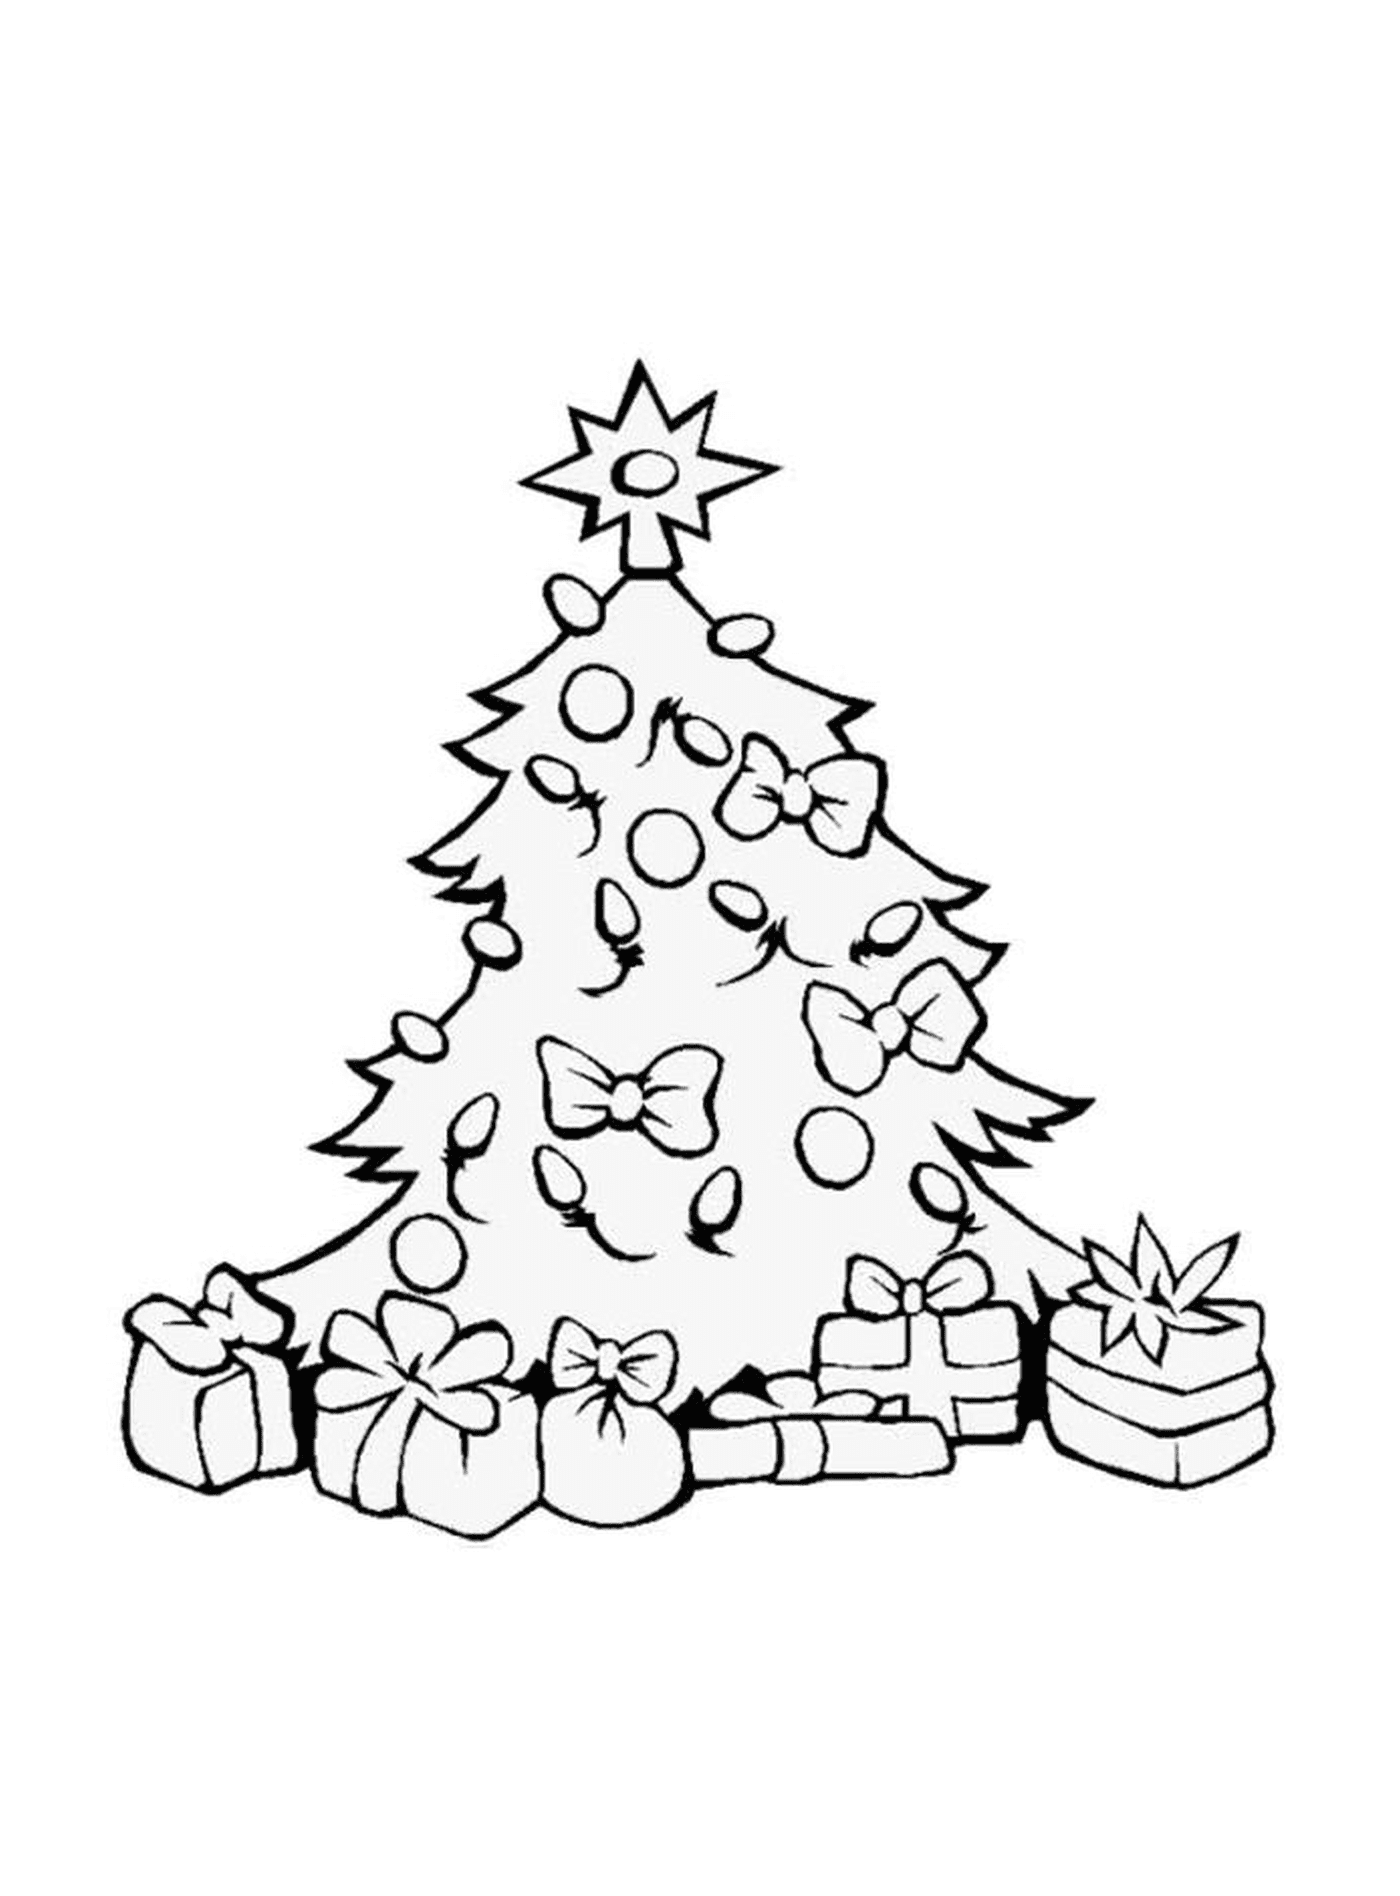  Uma árvore de Natal com muitos presentes ao redor 